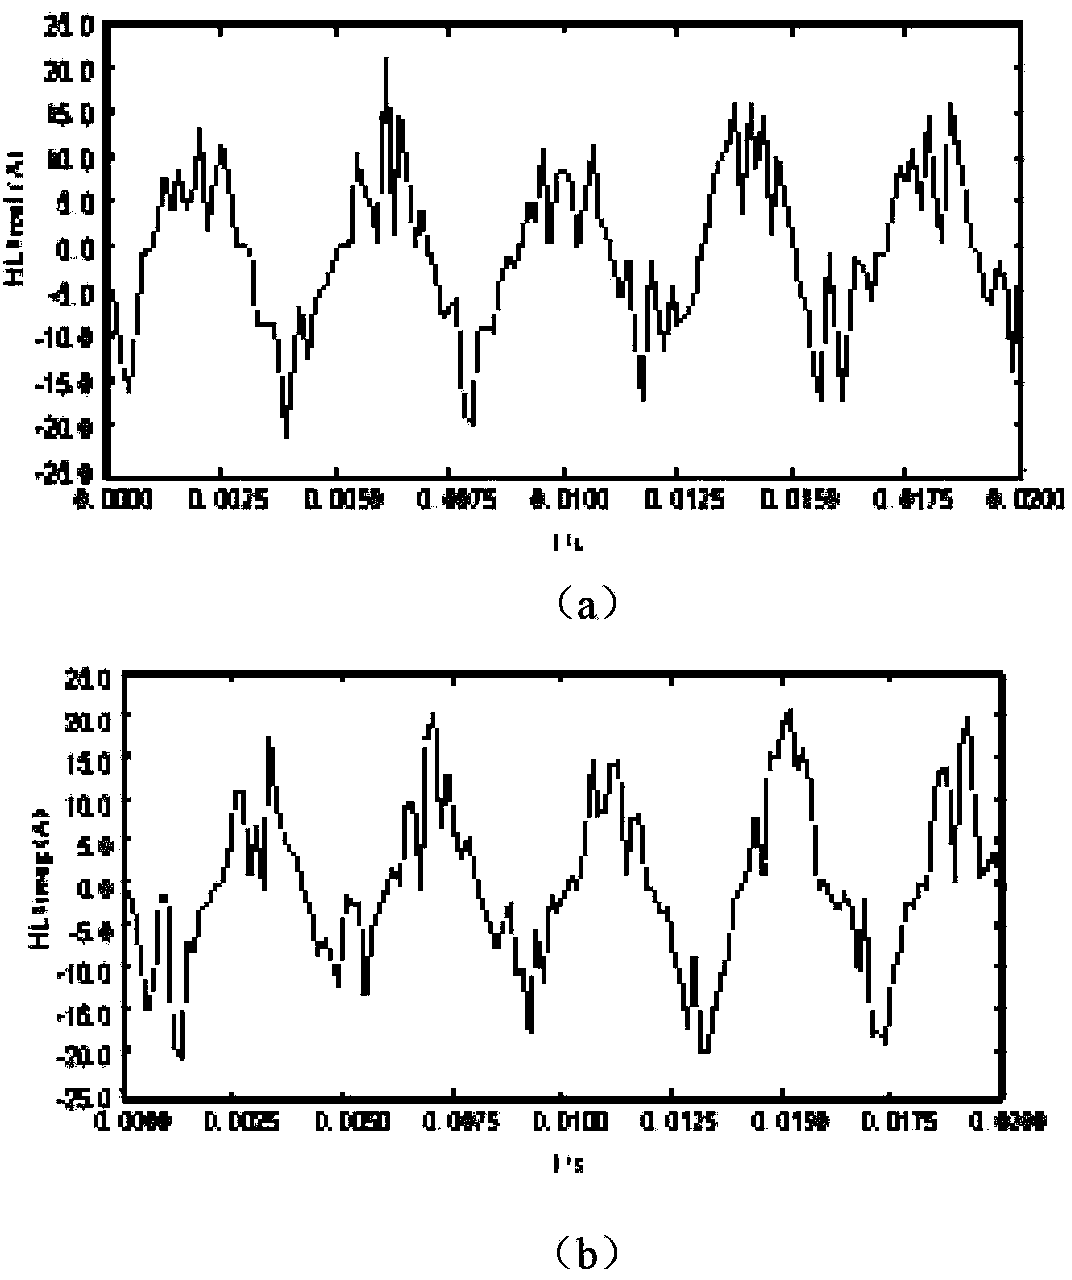 Method for computing harmonic impedance of system based on maximum likelihood estimation theory